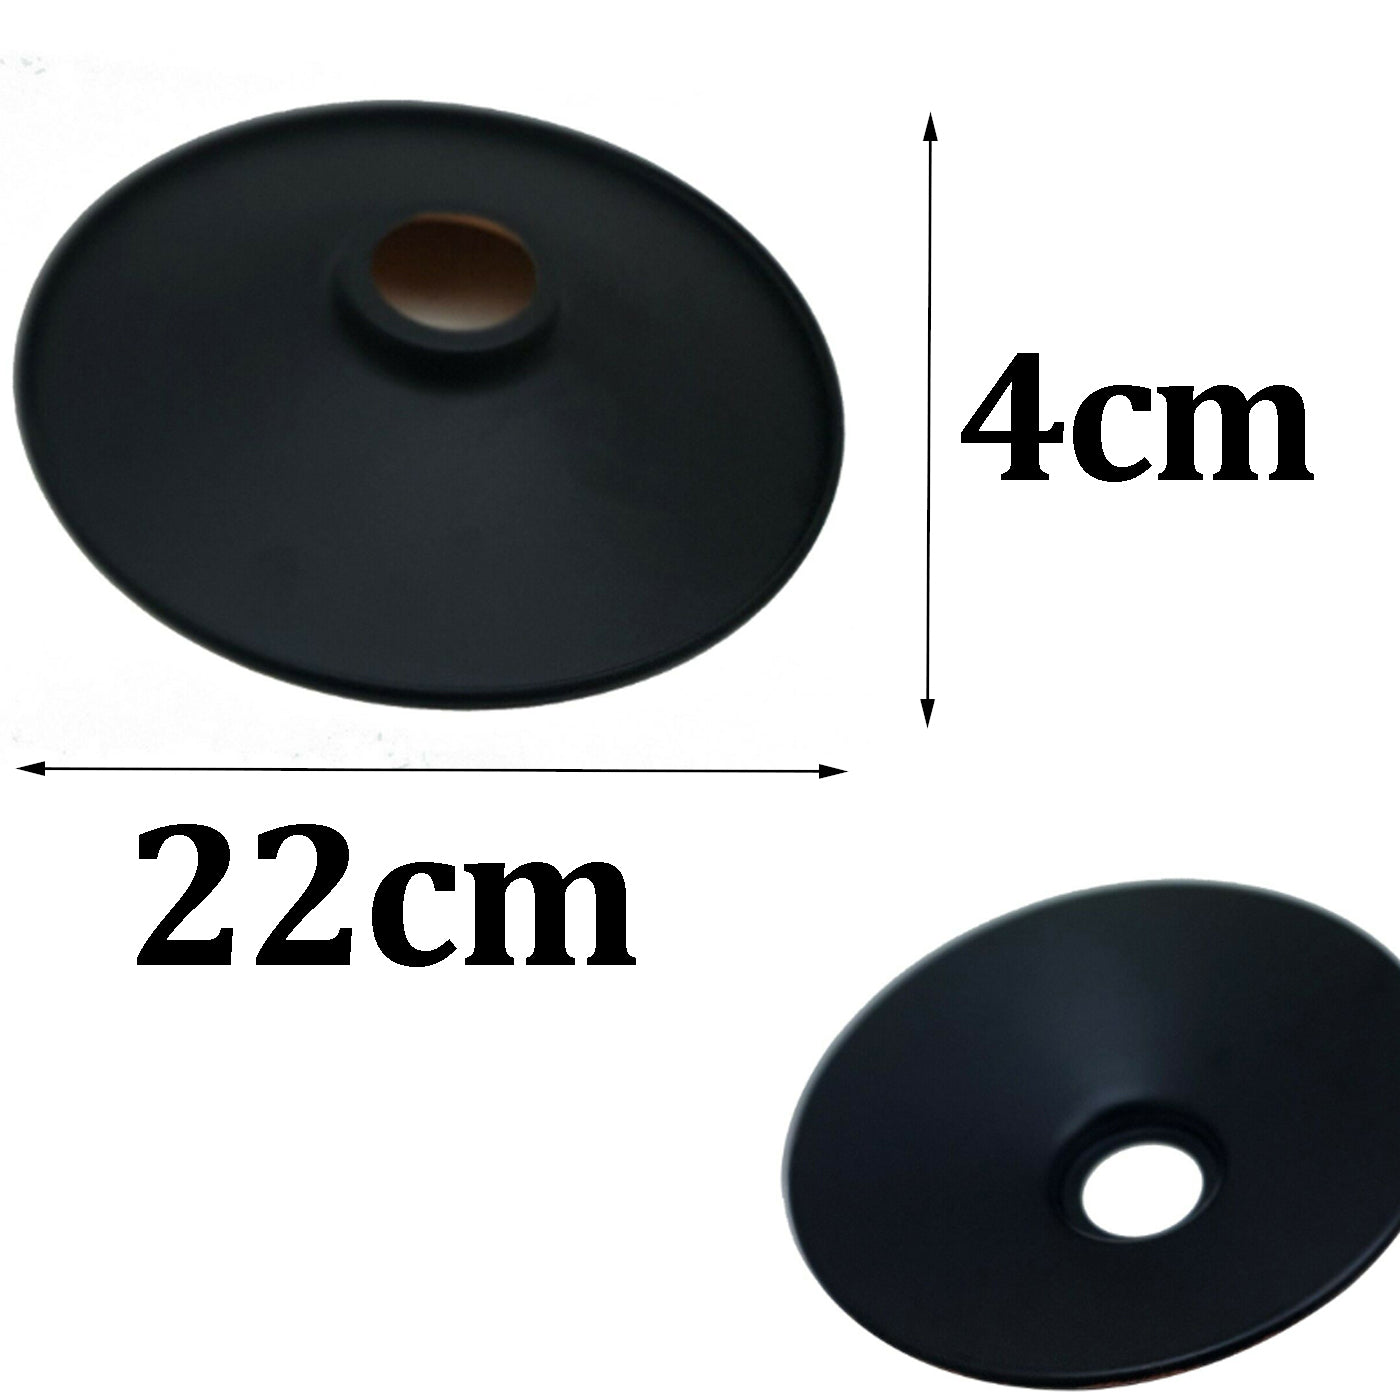 Lamp shades - size image